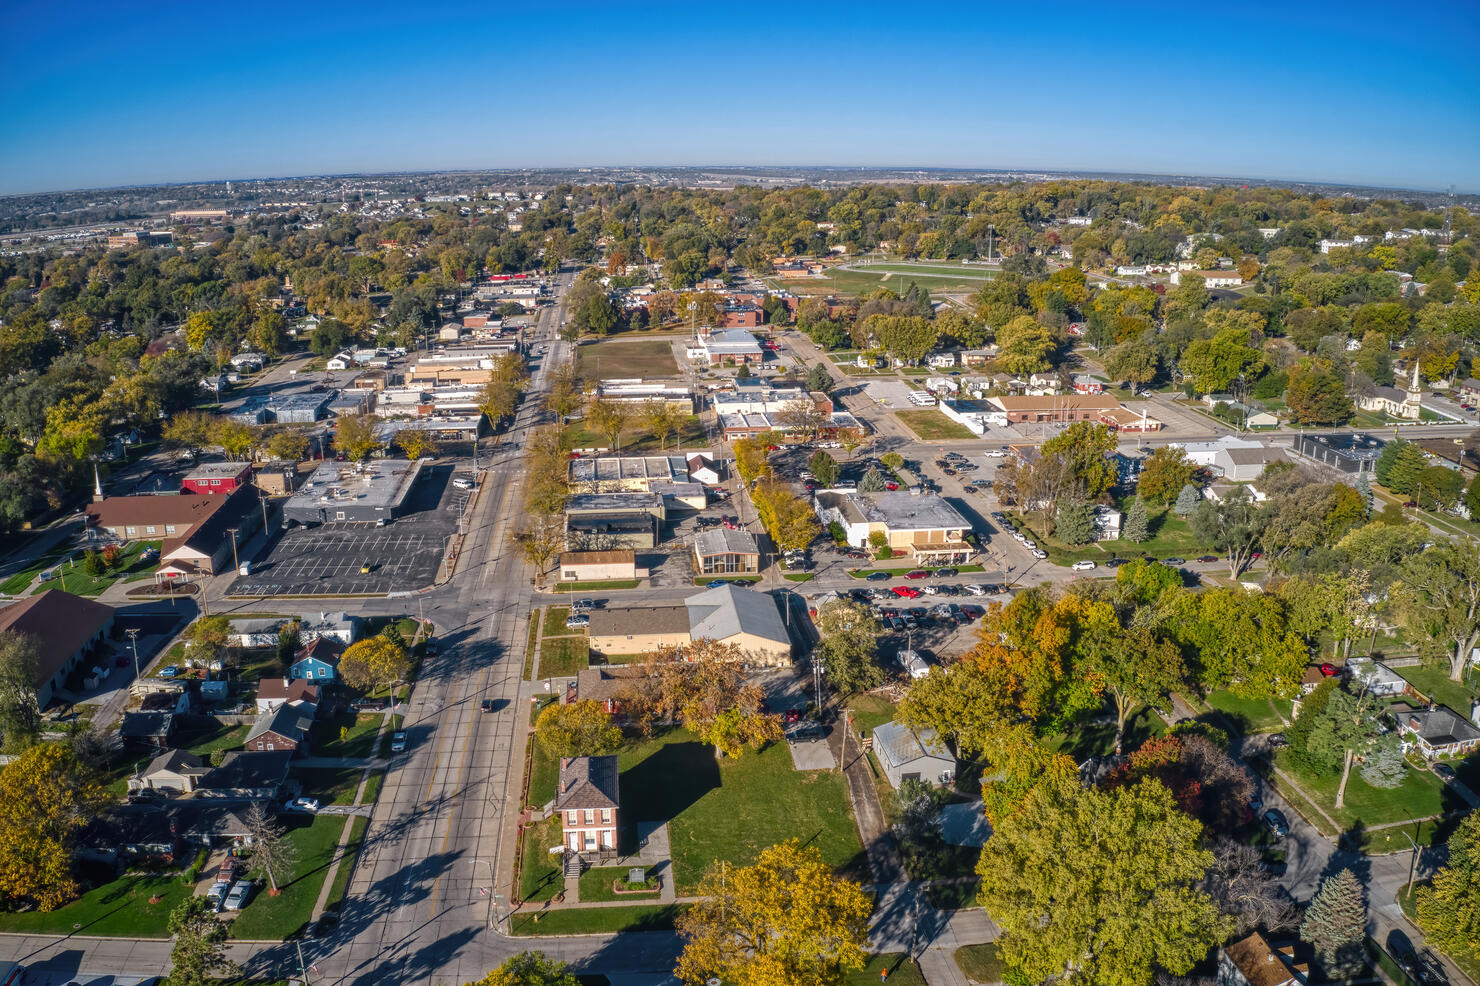 View of the Omaha Suburb of Bellevue, Nebraska